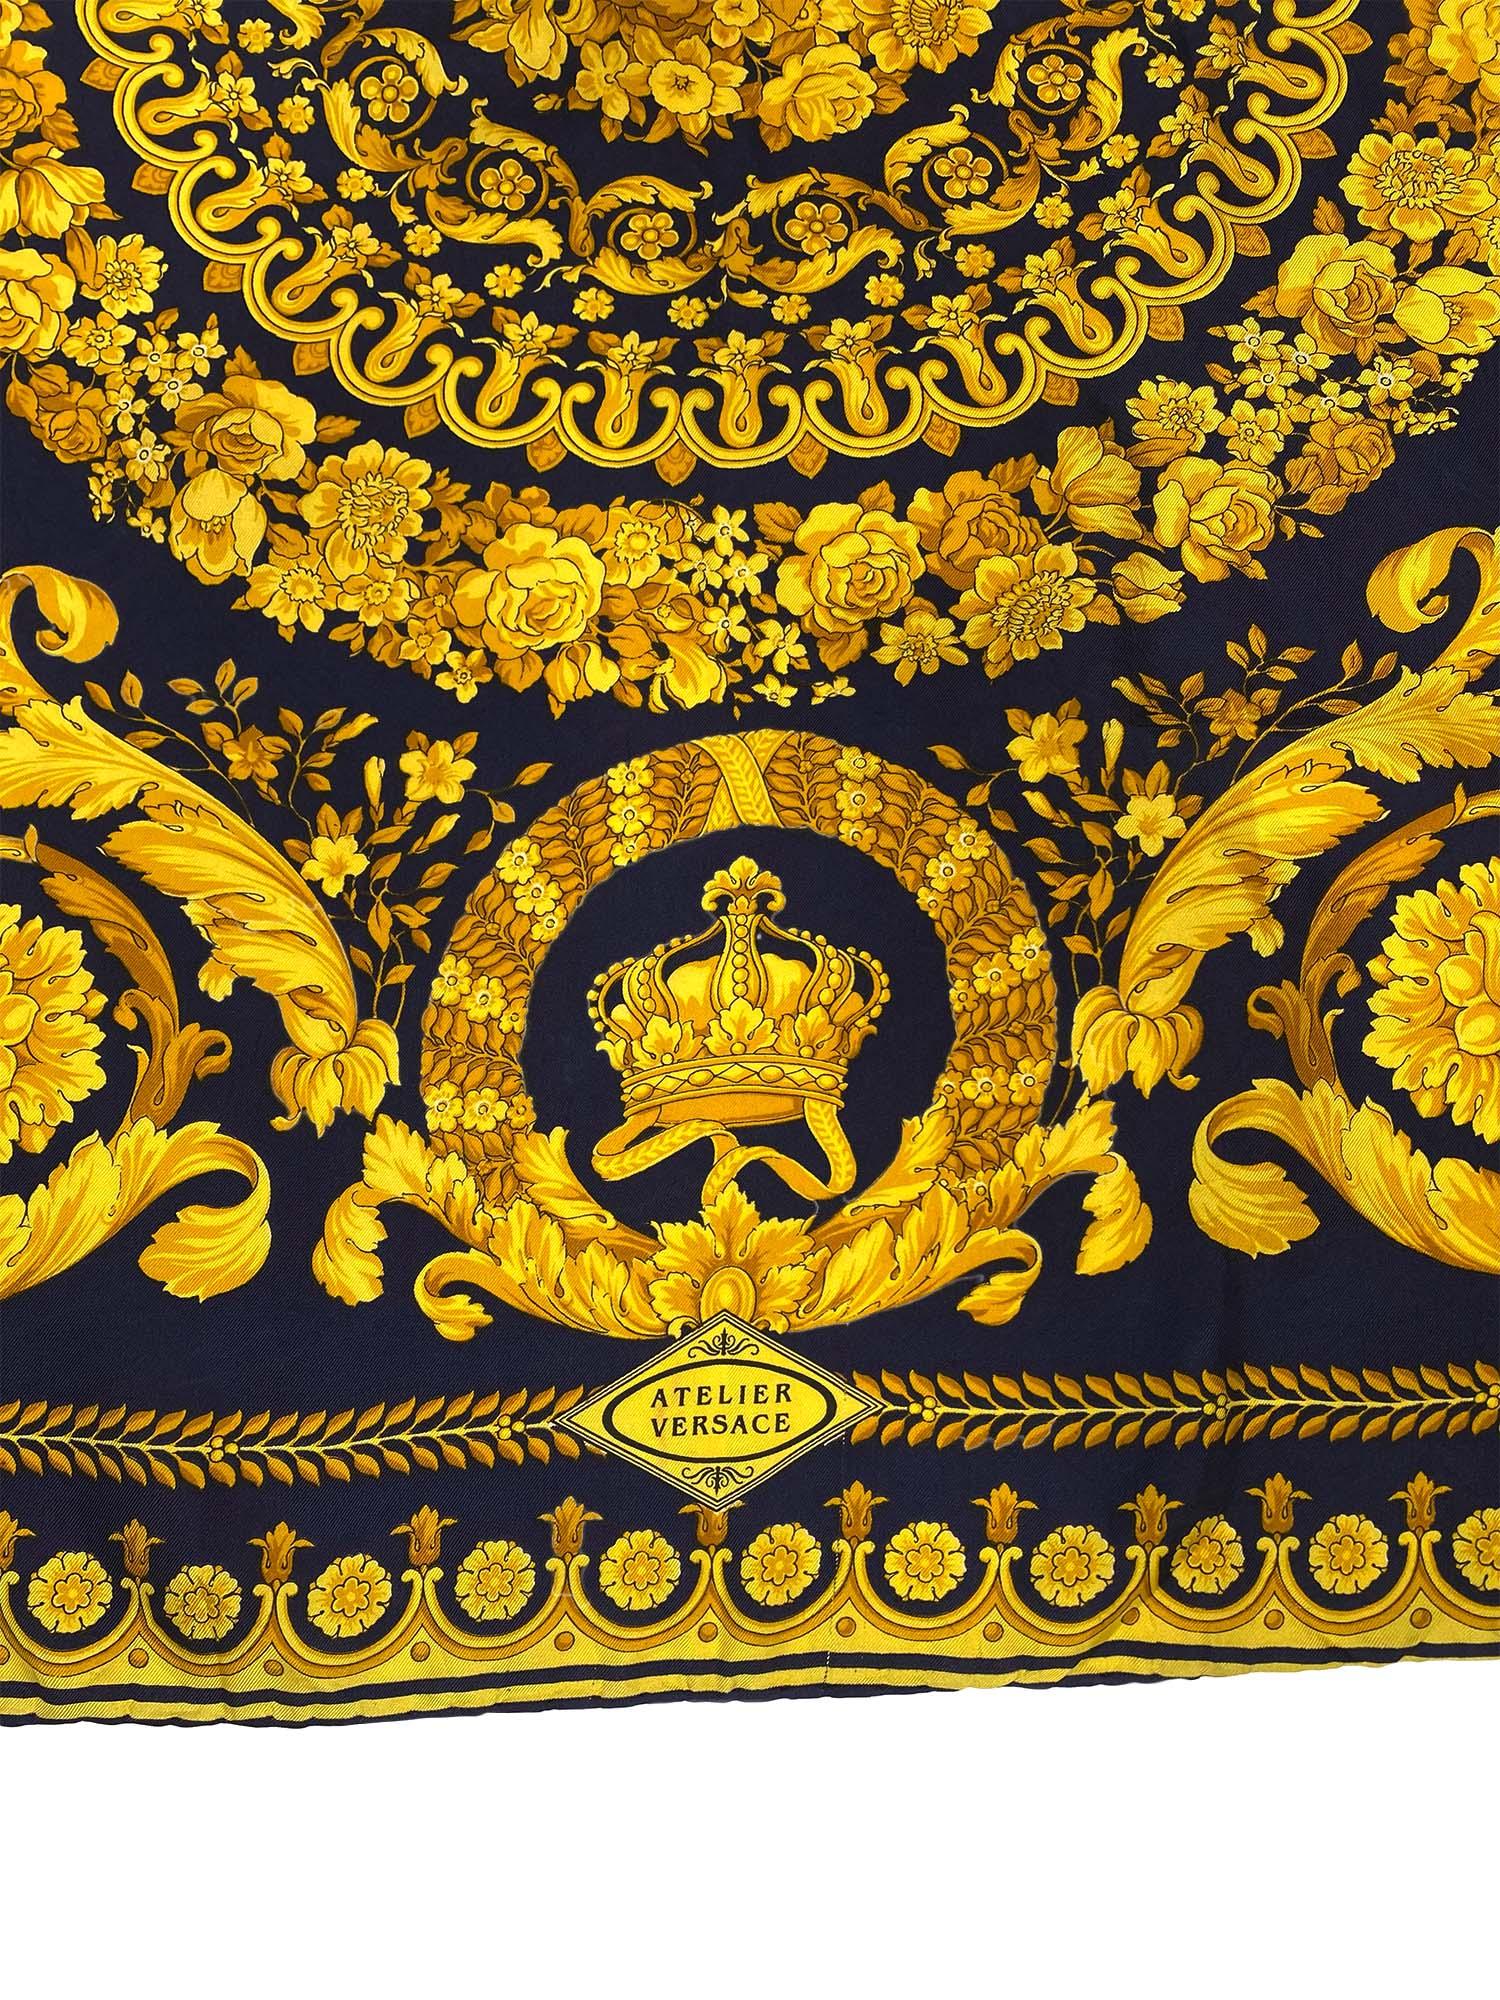 Wir präsentieren einen wunderschönen quadratischen Seidenschal im Barockstil von Atelier Versace, entworfen von Gianni Versace. Dieser Schal zeigt ein klassisch goldenes Versace-Blumen-Barockmuster auf einem marineblauen Hintergrund mit Kronen und